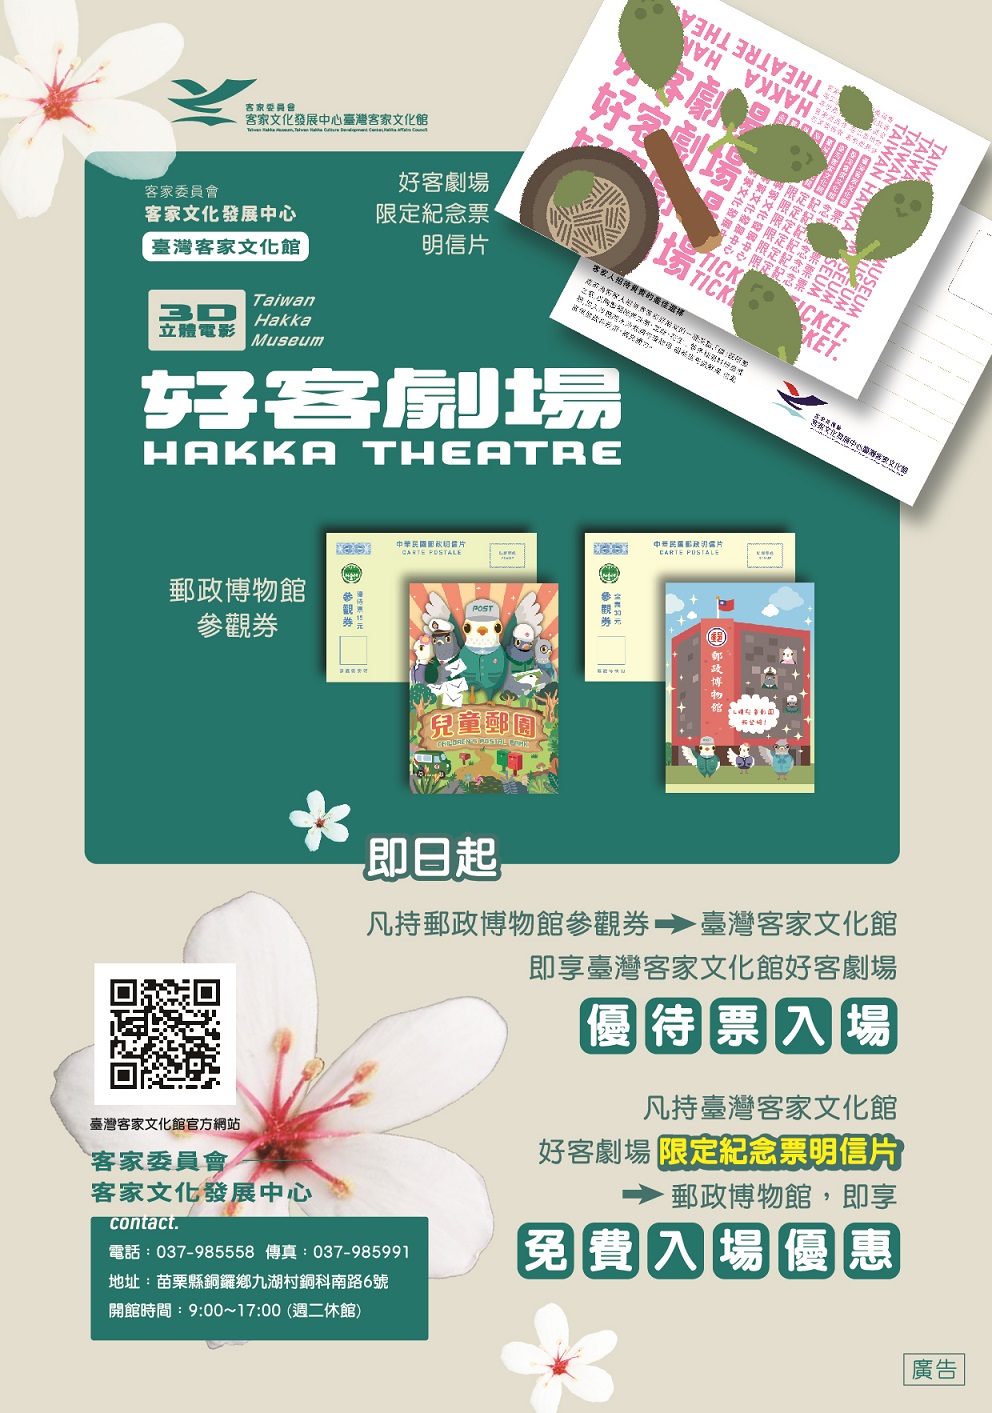 郵政博物館與臺灣客家文化館購票優惠合作方案